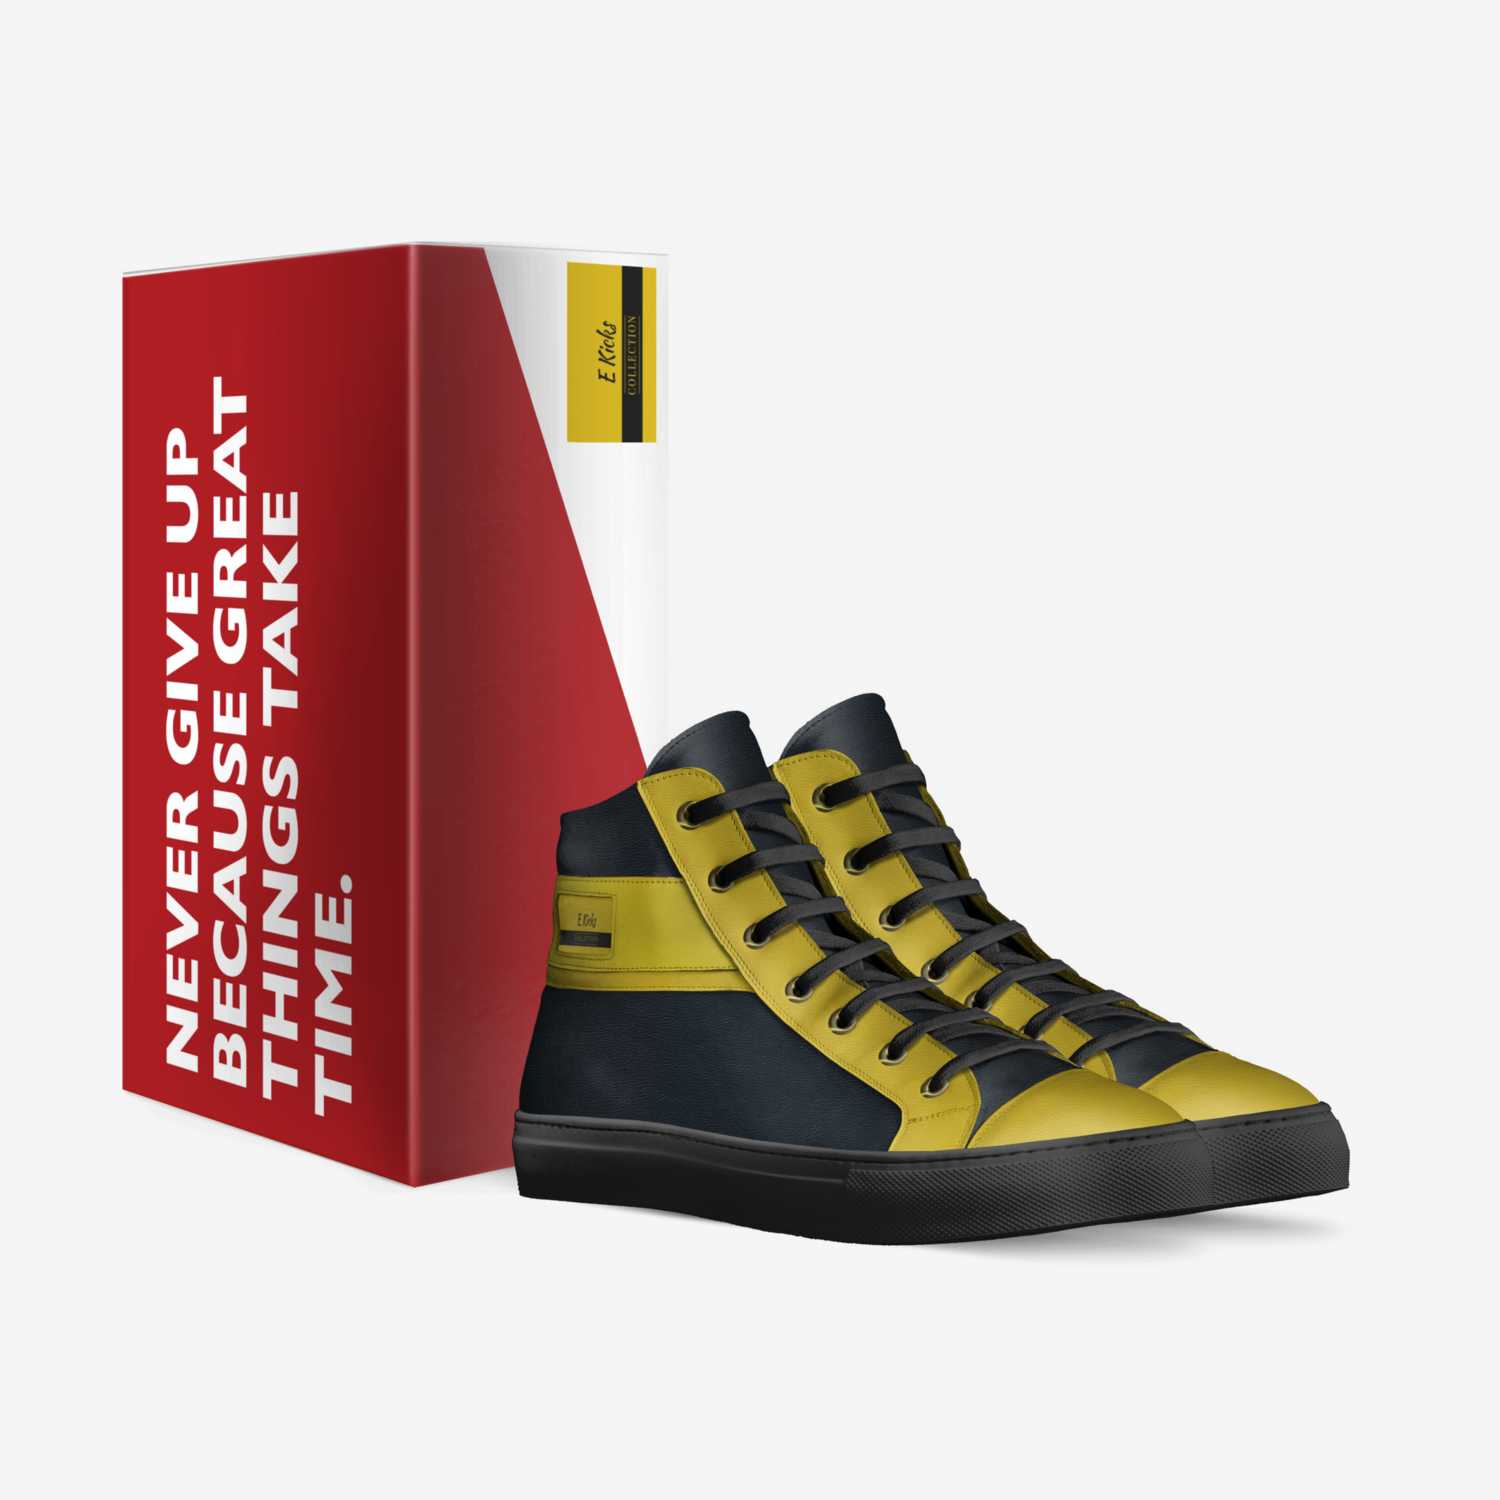 E Kicks custom made in Italy shoes by Emoney Bolin-johnson | Box view